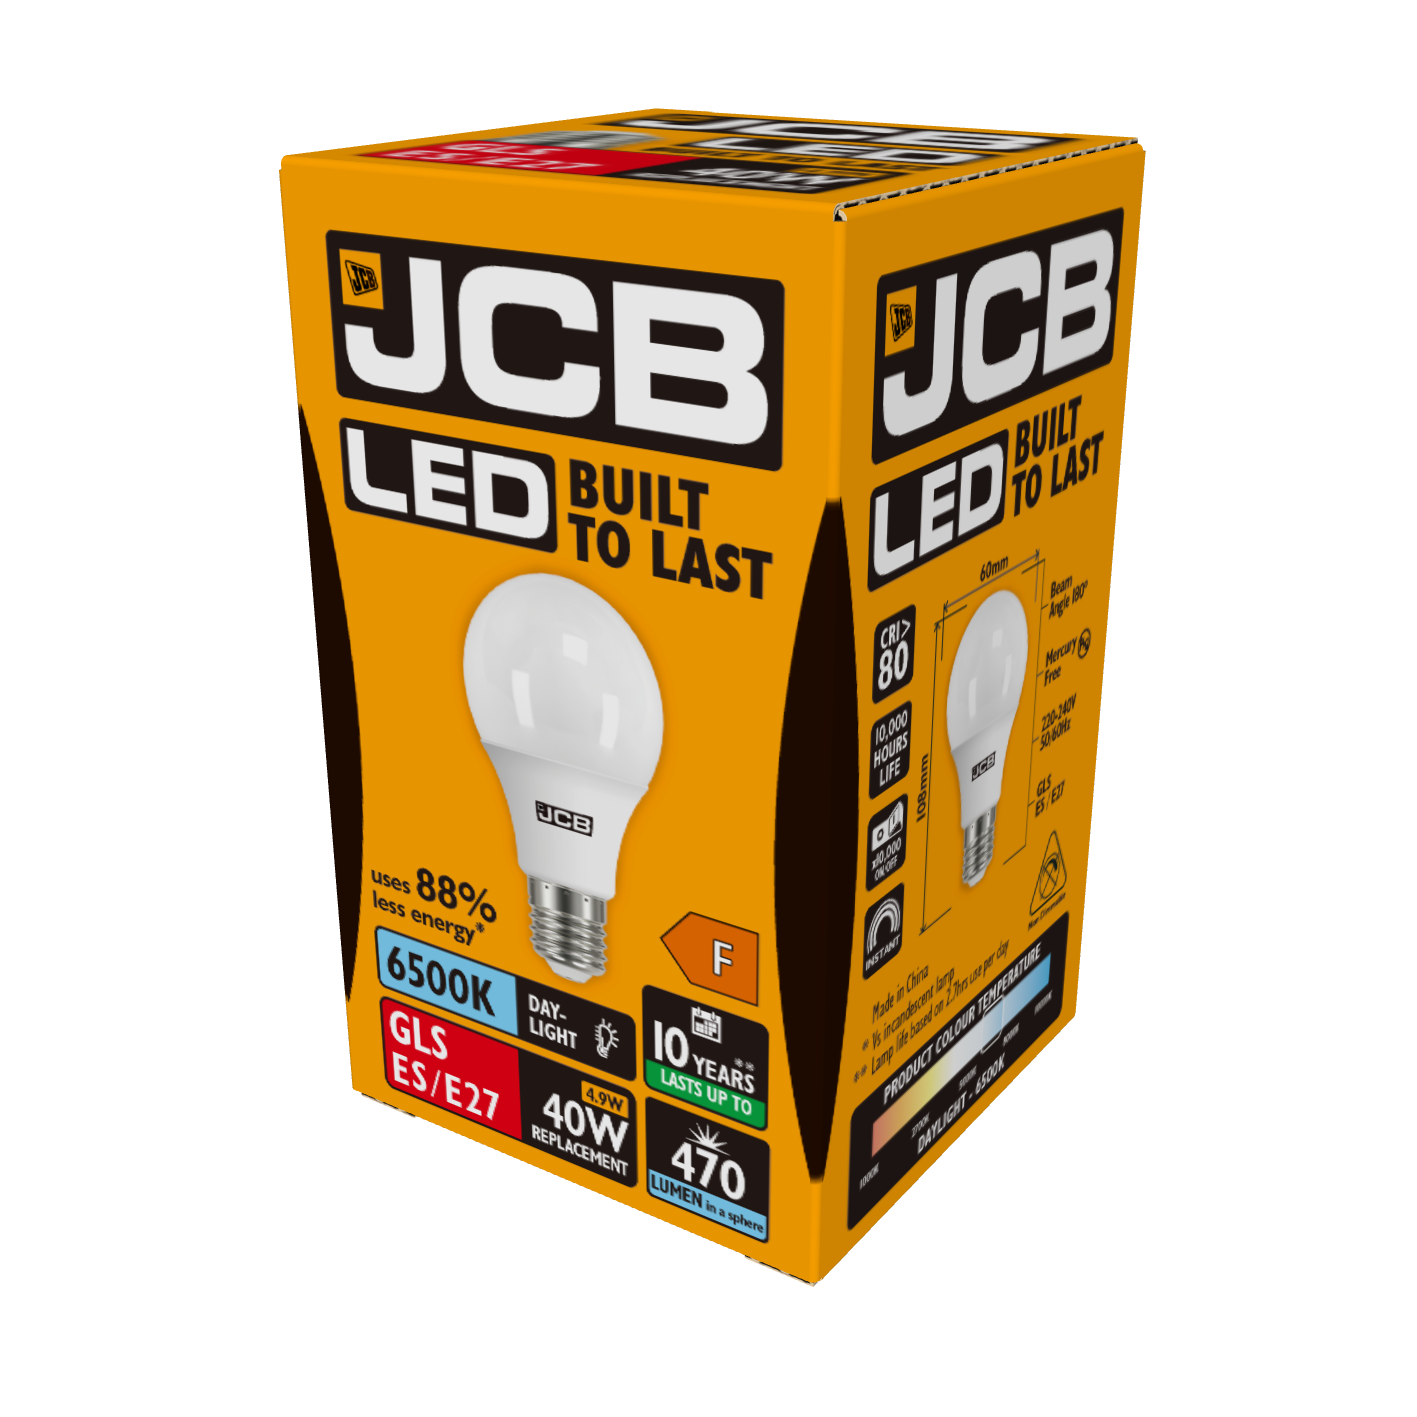 JCB LED GLS E27 (ES) 470lm 4,9W 6.500K (luz diurna), Caja de 1